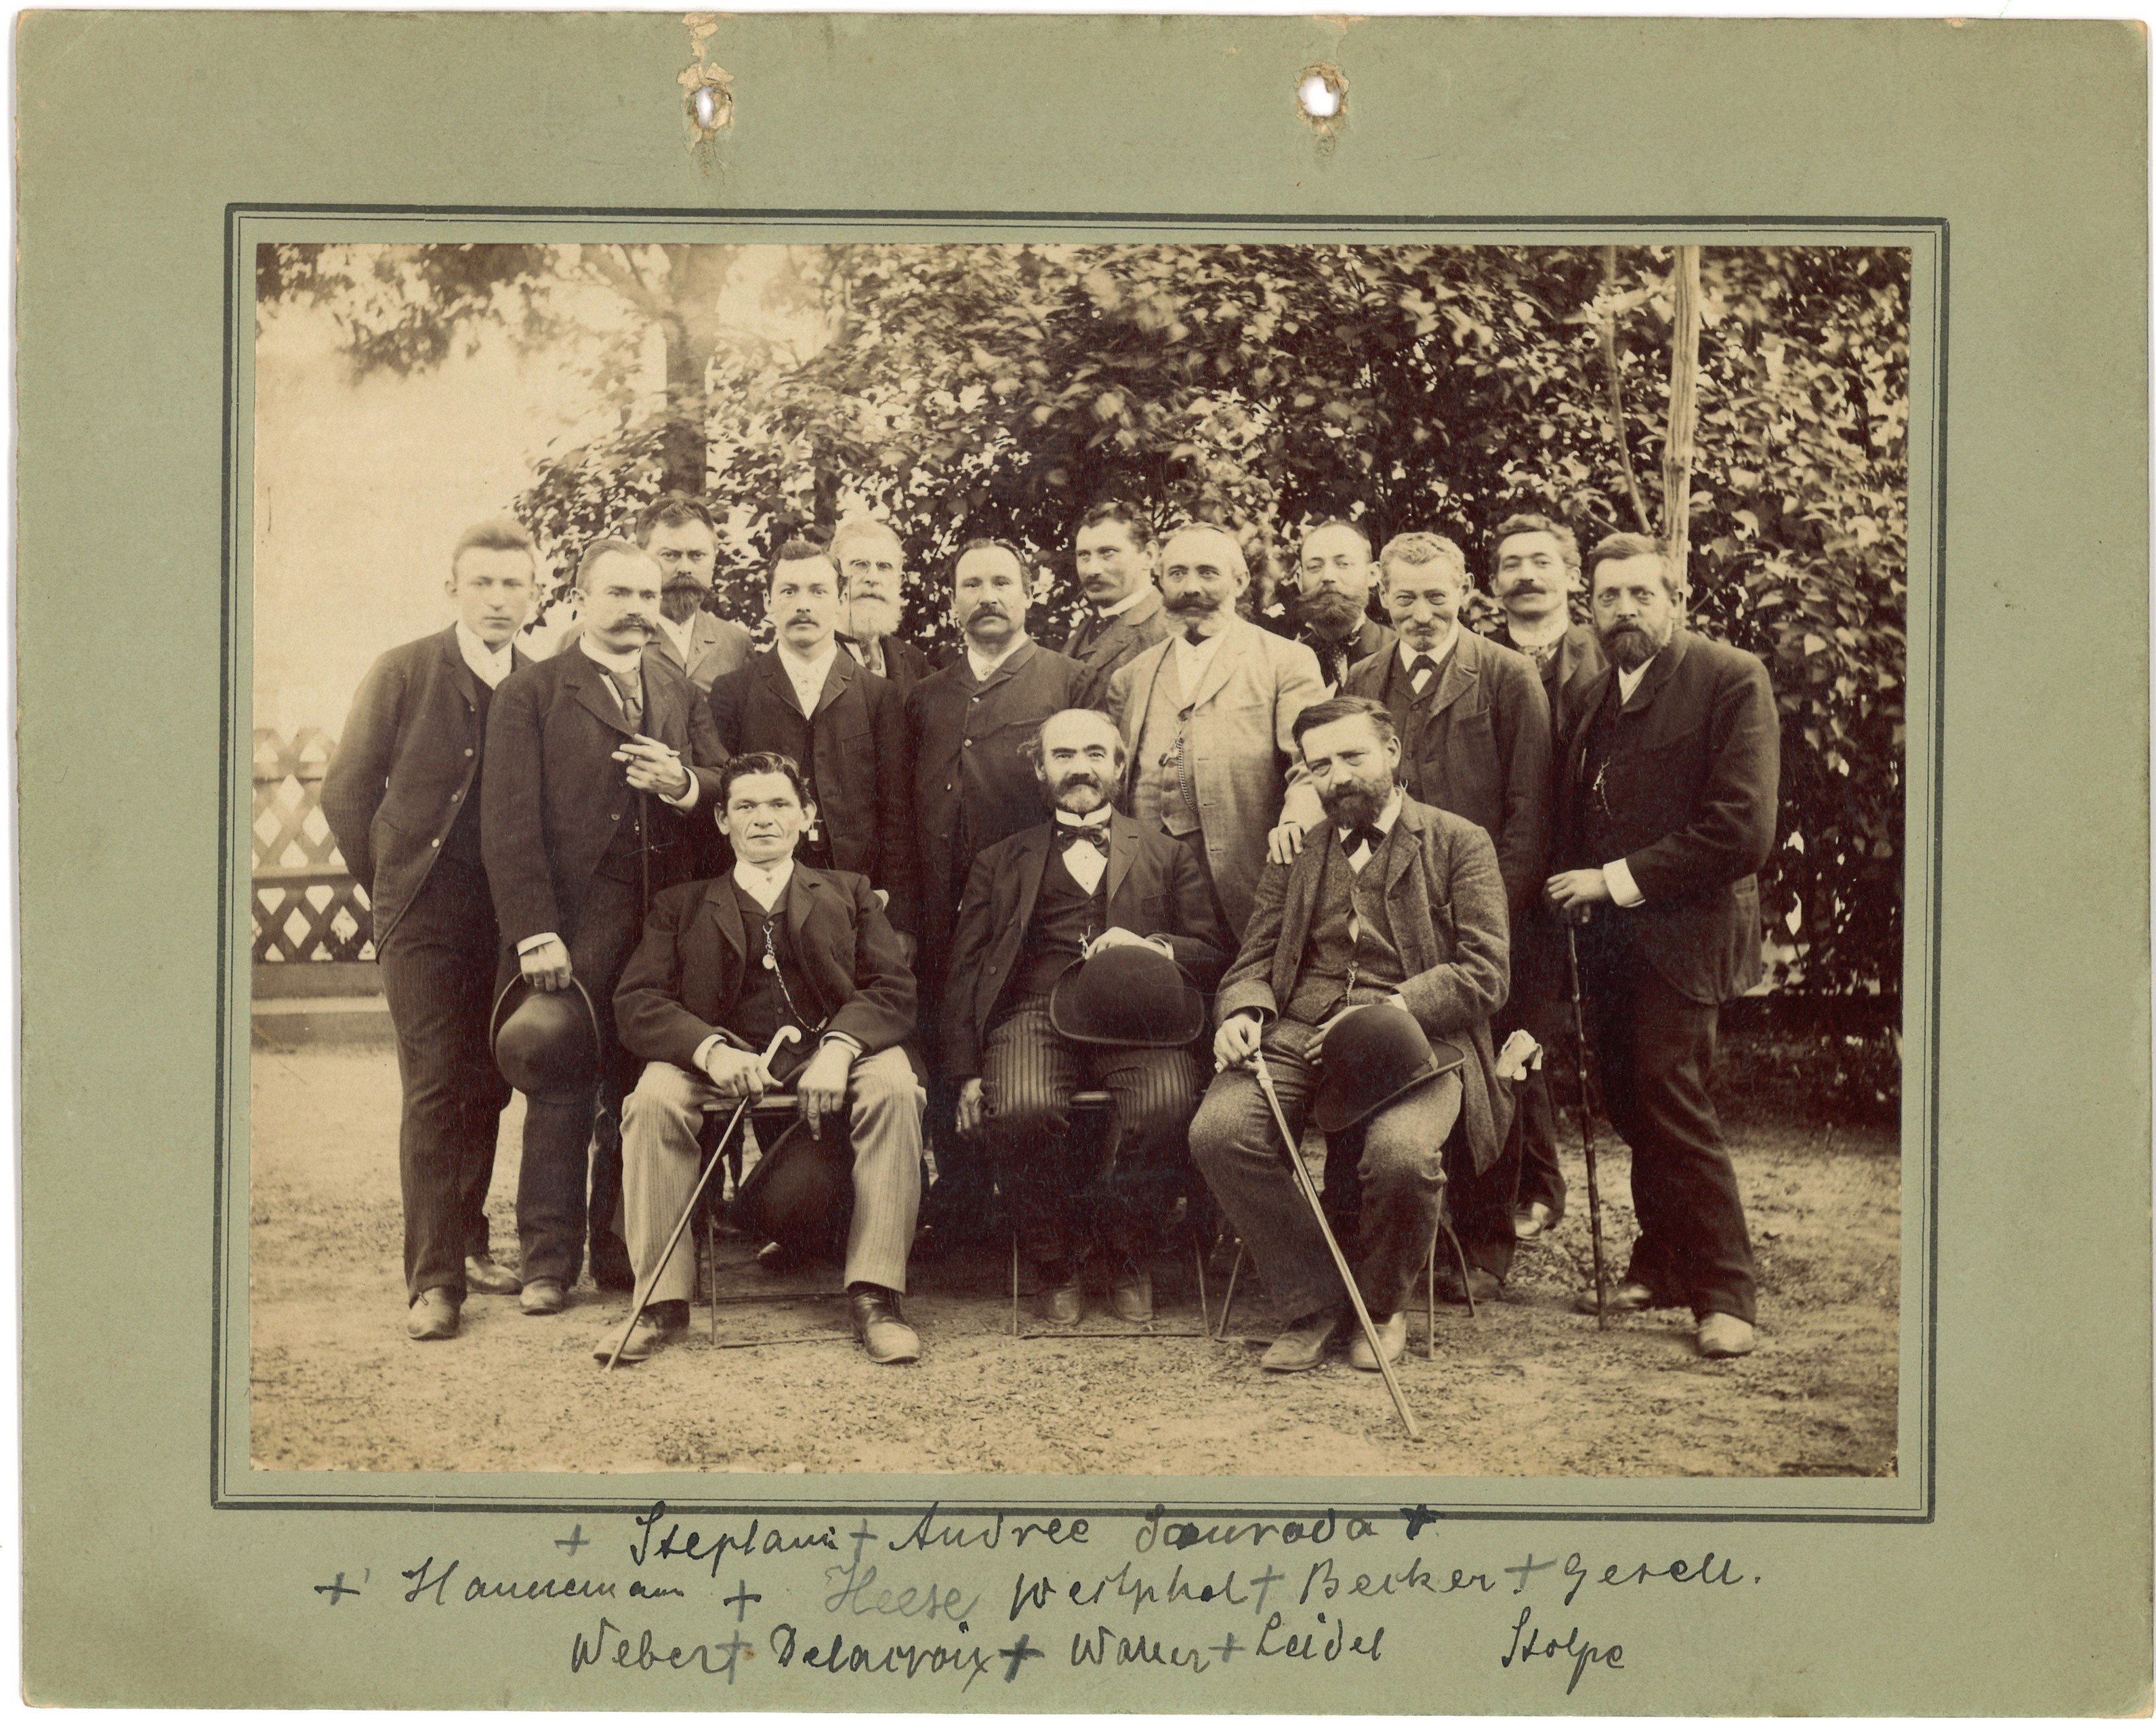 Berlin: Gruppenbild der Vergolder-Innung Berlin 1892 (Landesgeschichtliche Vereinigung für die Mark Brandenburg e.V., Archiv CC BY)